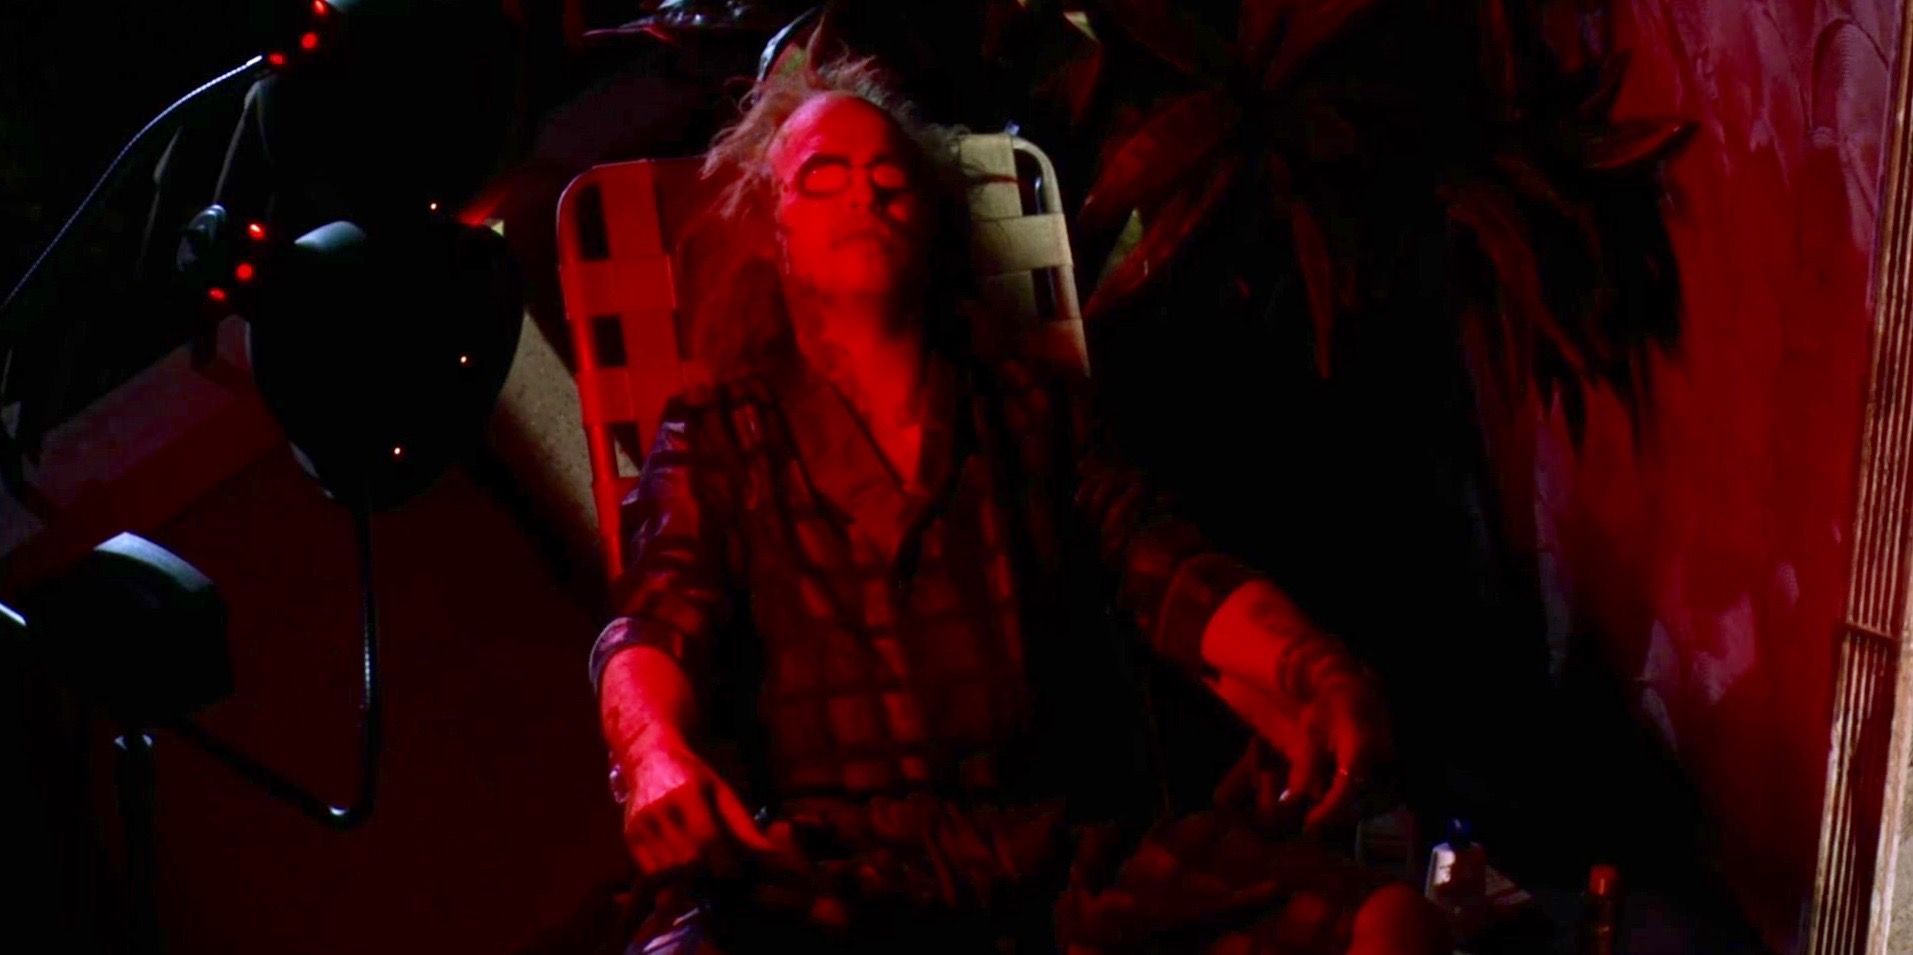 Michael Keaton sitting down as Beetlejuice